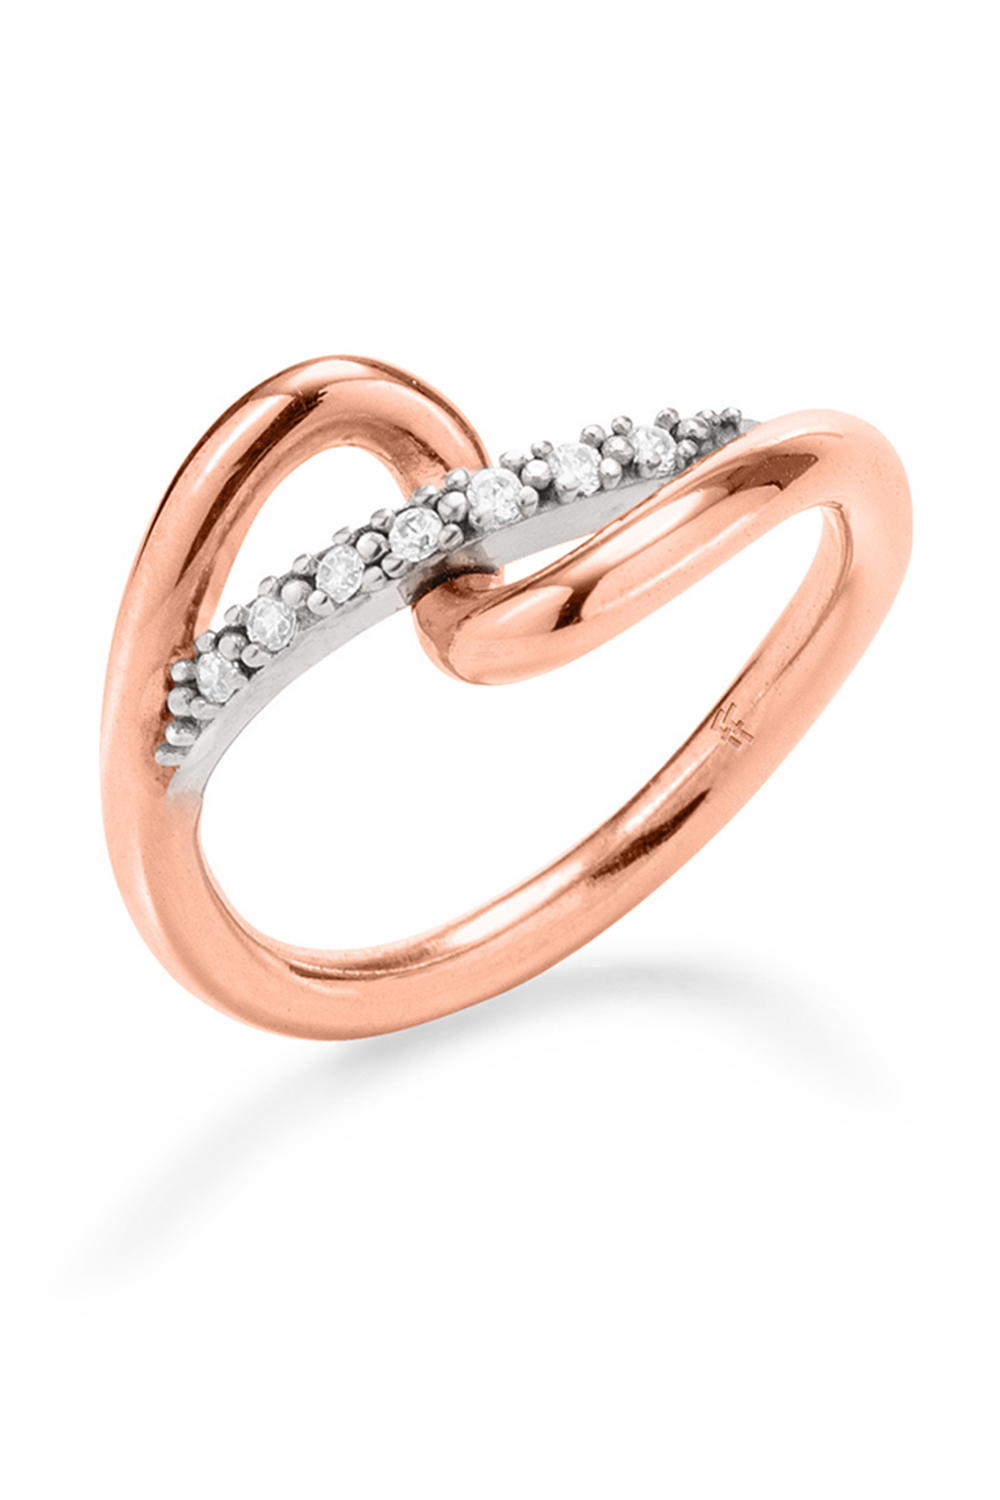 Γυναικεία/Αξεσουάρ/Κοσμήματα/Δαχτυλίδια FOLLI FOLLIE - Γυναικείο δαχτυλίδι από ορείχαλκο FOLLI FOLLIE FLUIDITY ροζ χρυσό